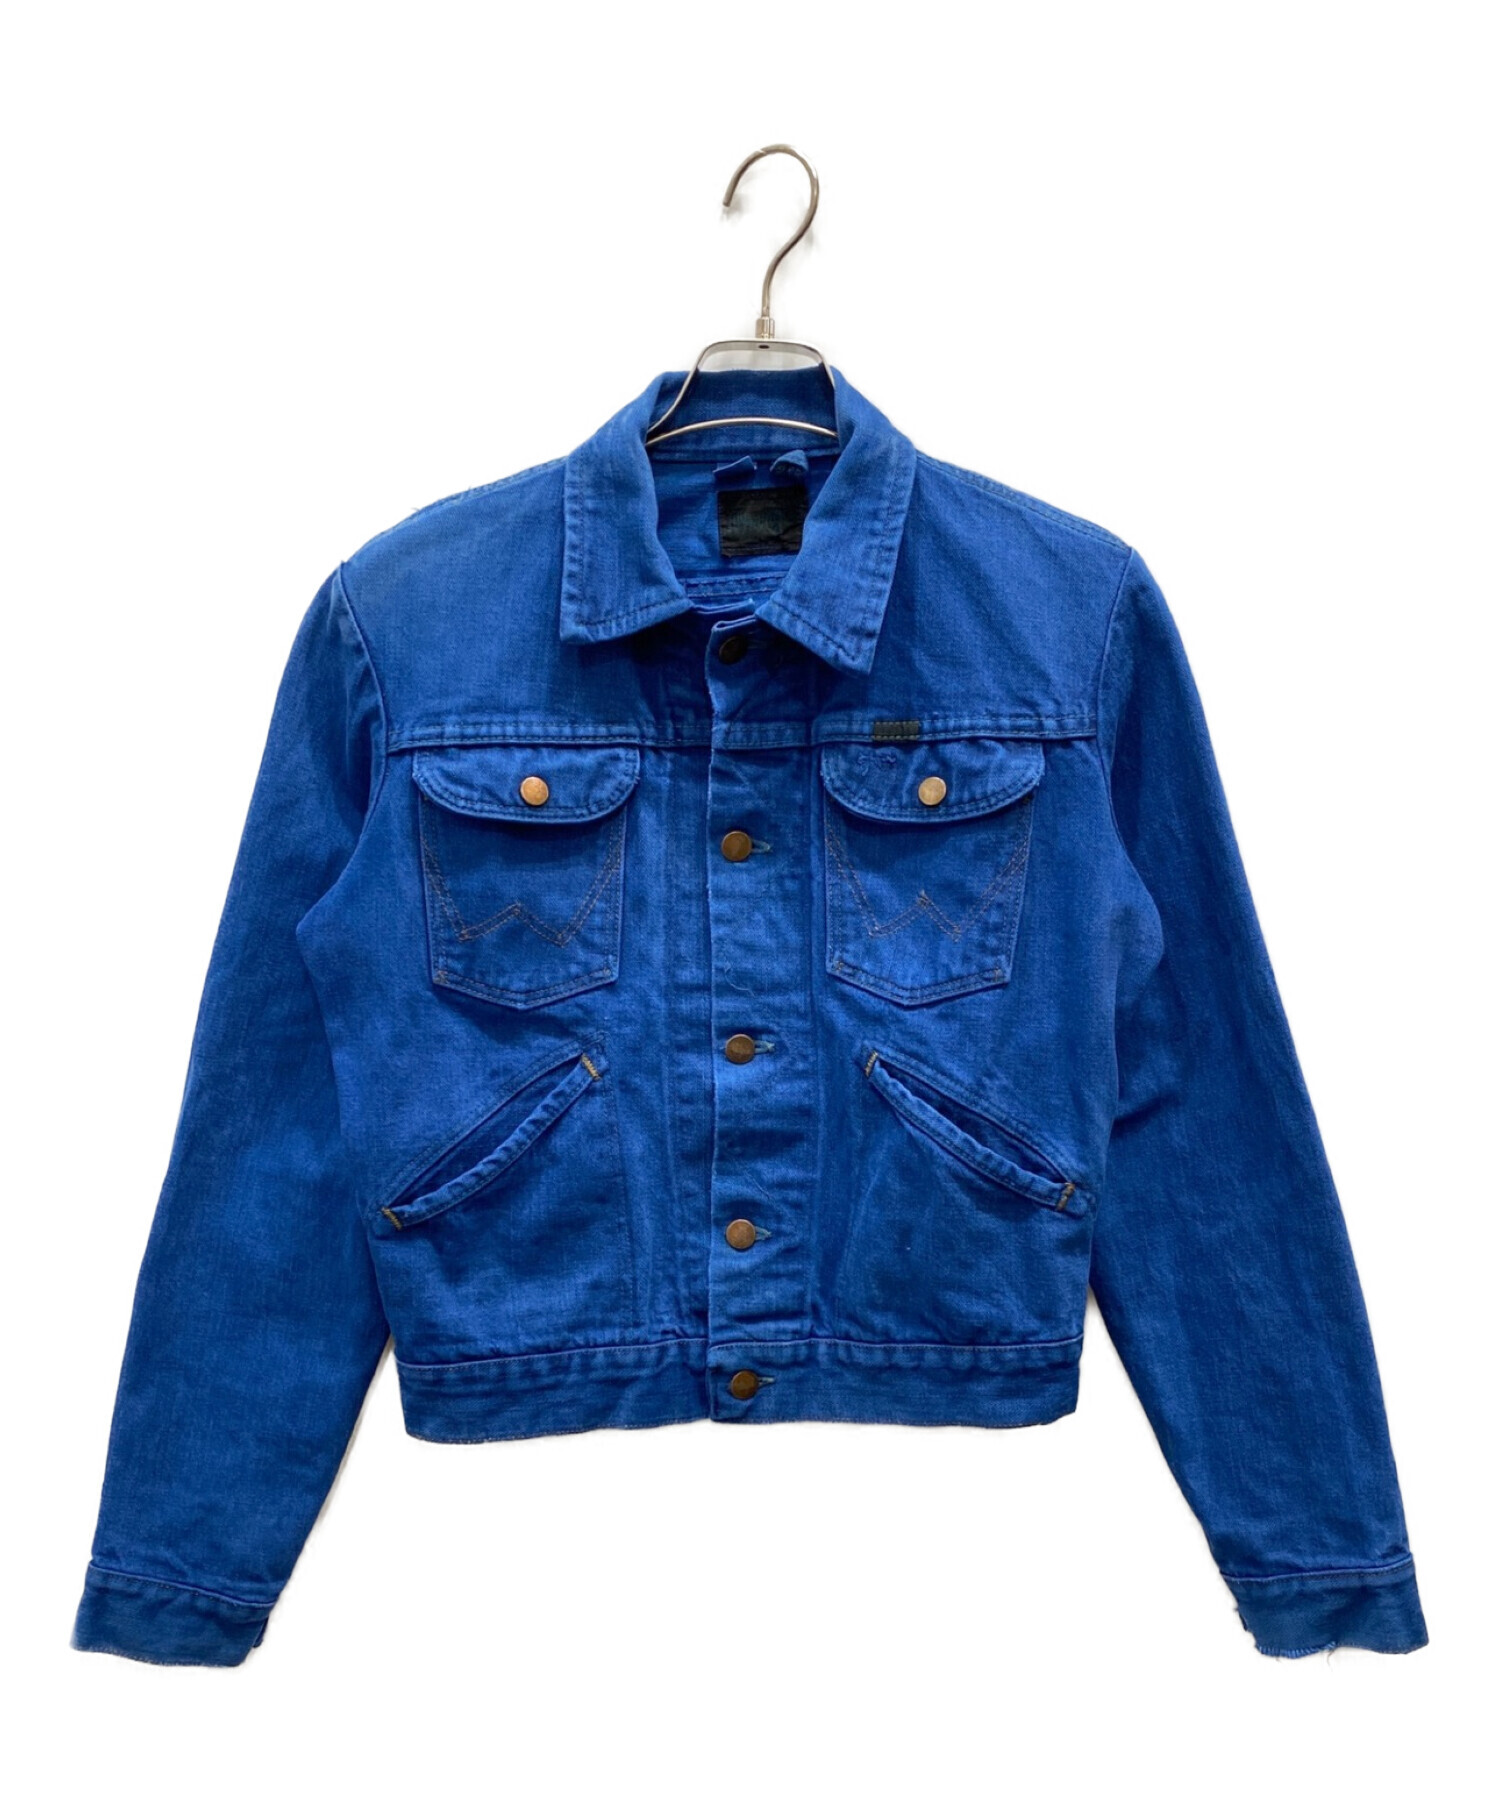 中古・古着通販】Wrangler (ラングラー) 70s製品染めジャケット ブルー 